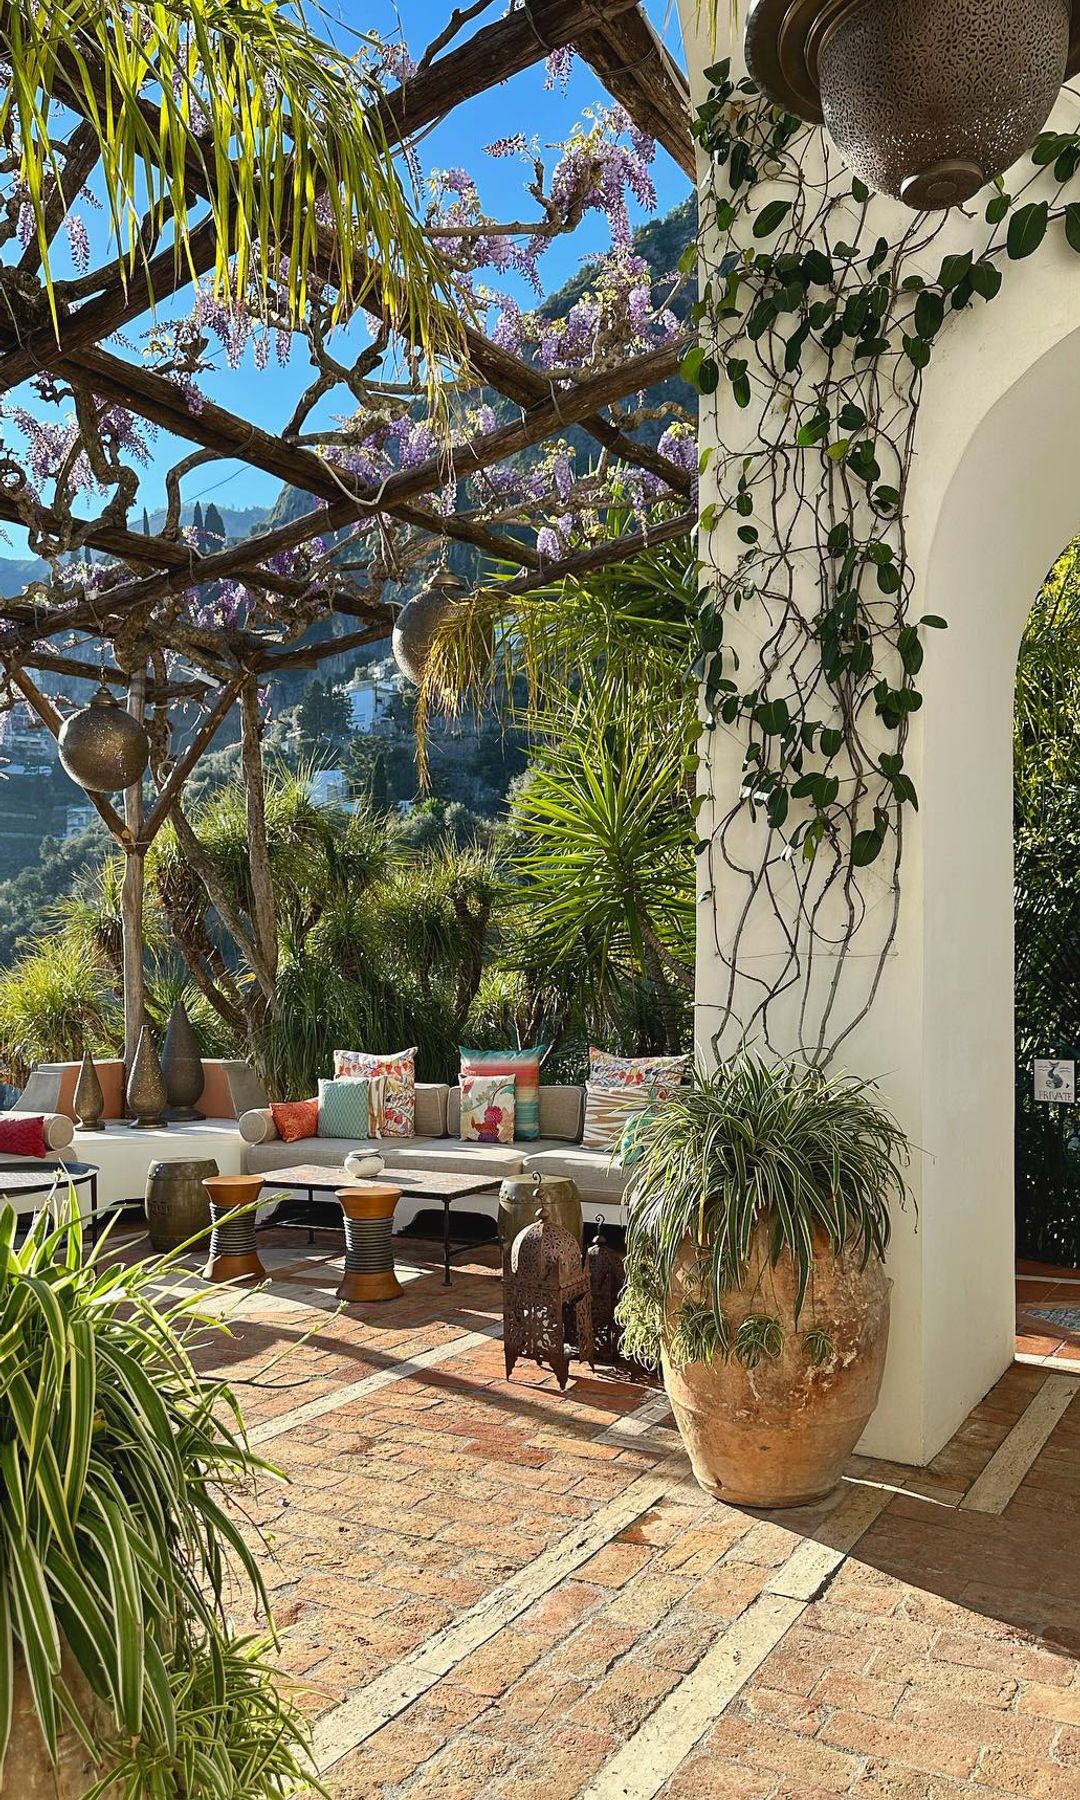 Villa Trevilla, antigua casa del director de cine Franco Zeffirelli hoy reconvertida en hotel de lujo en Positano, en la Costa Amalfitana